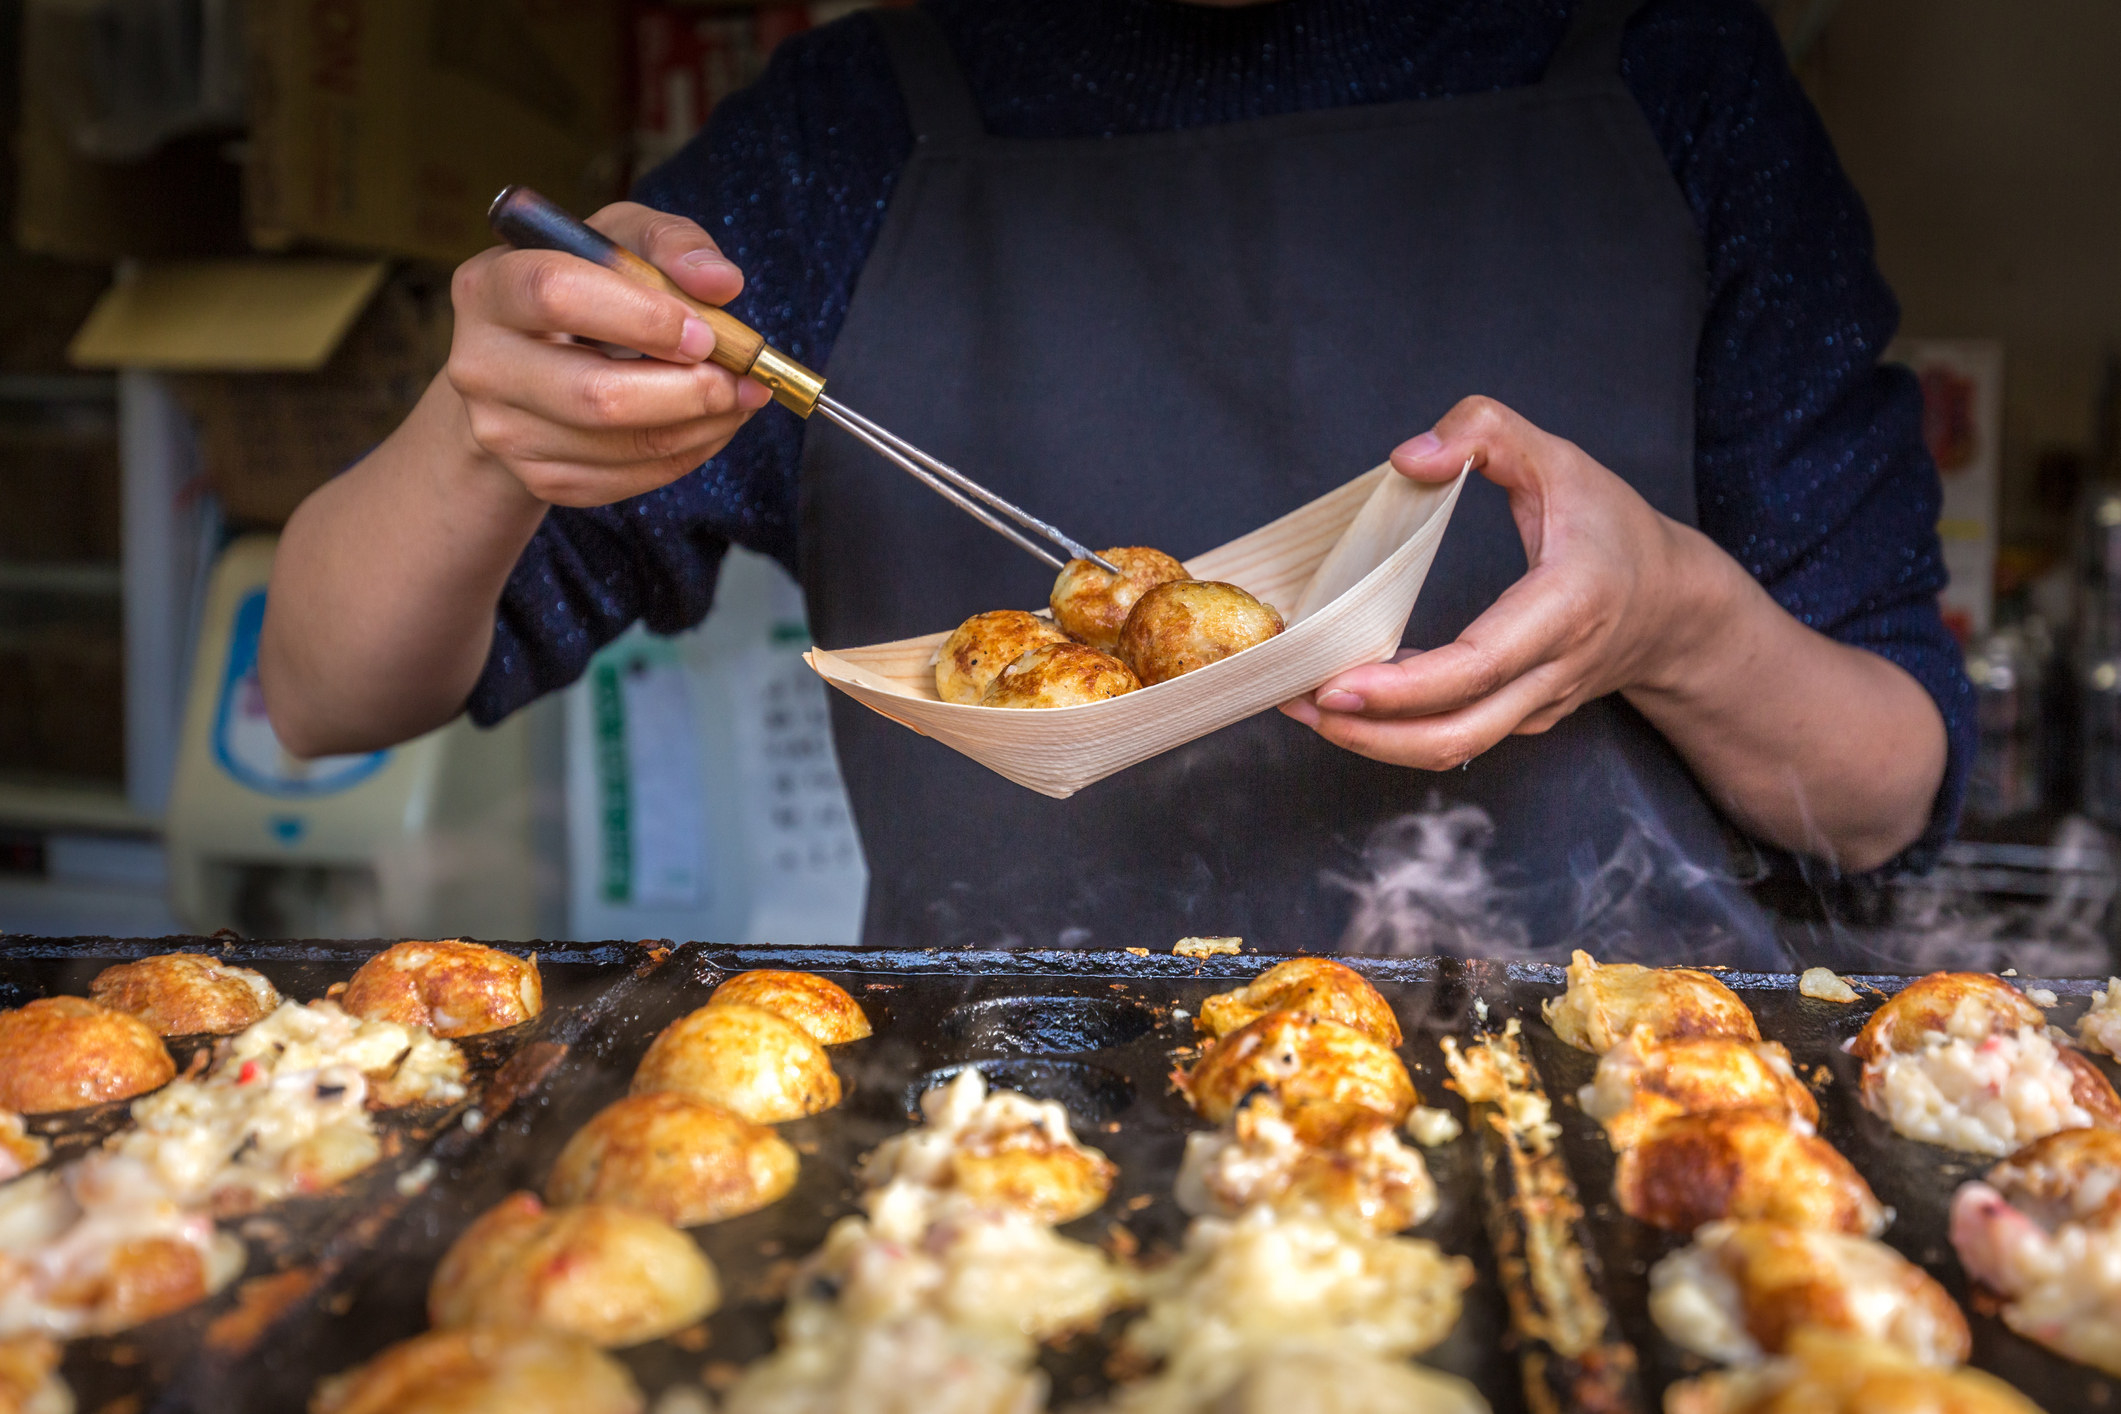 Tatoyaki cooking in a street food stall